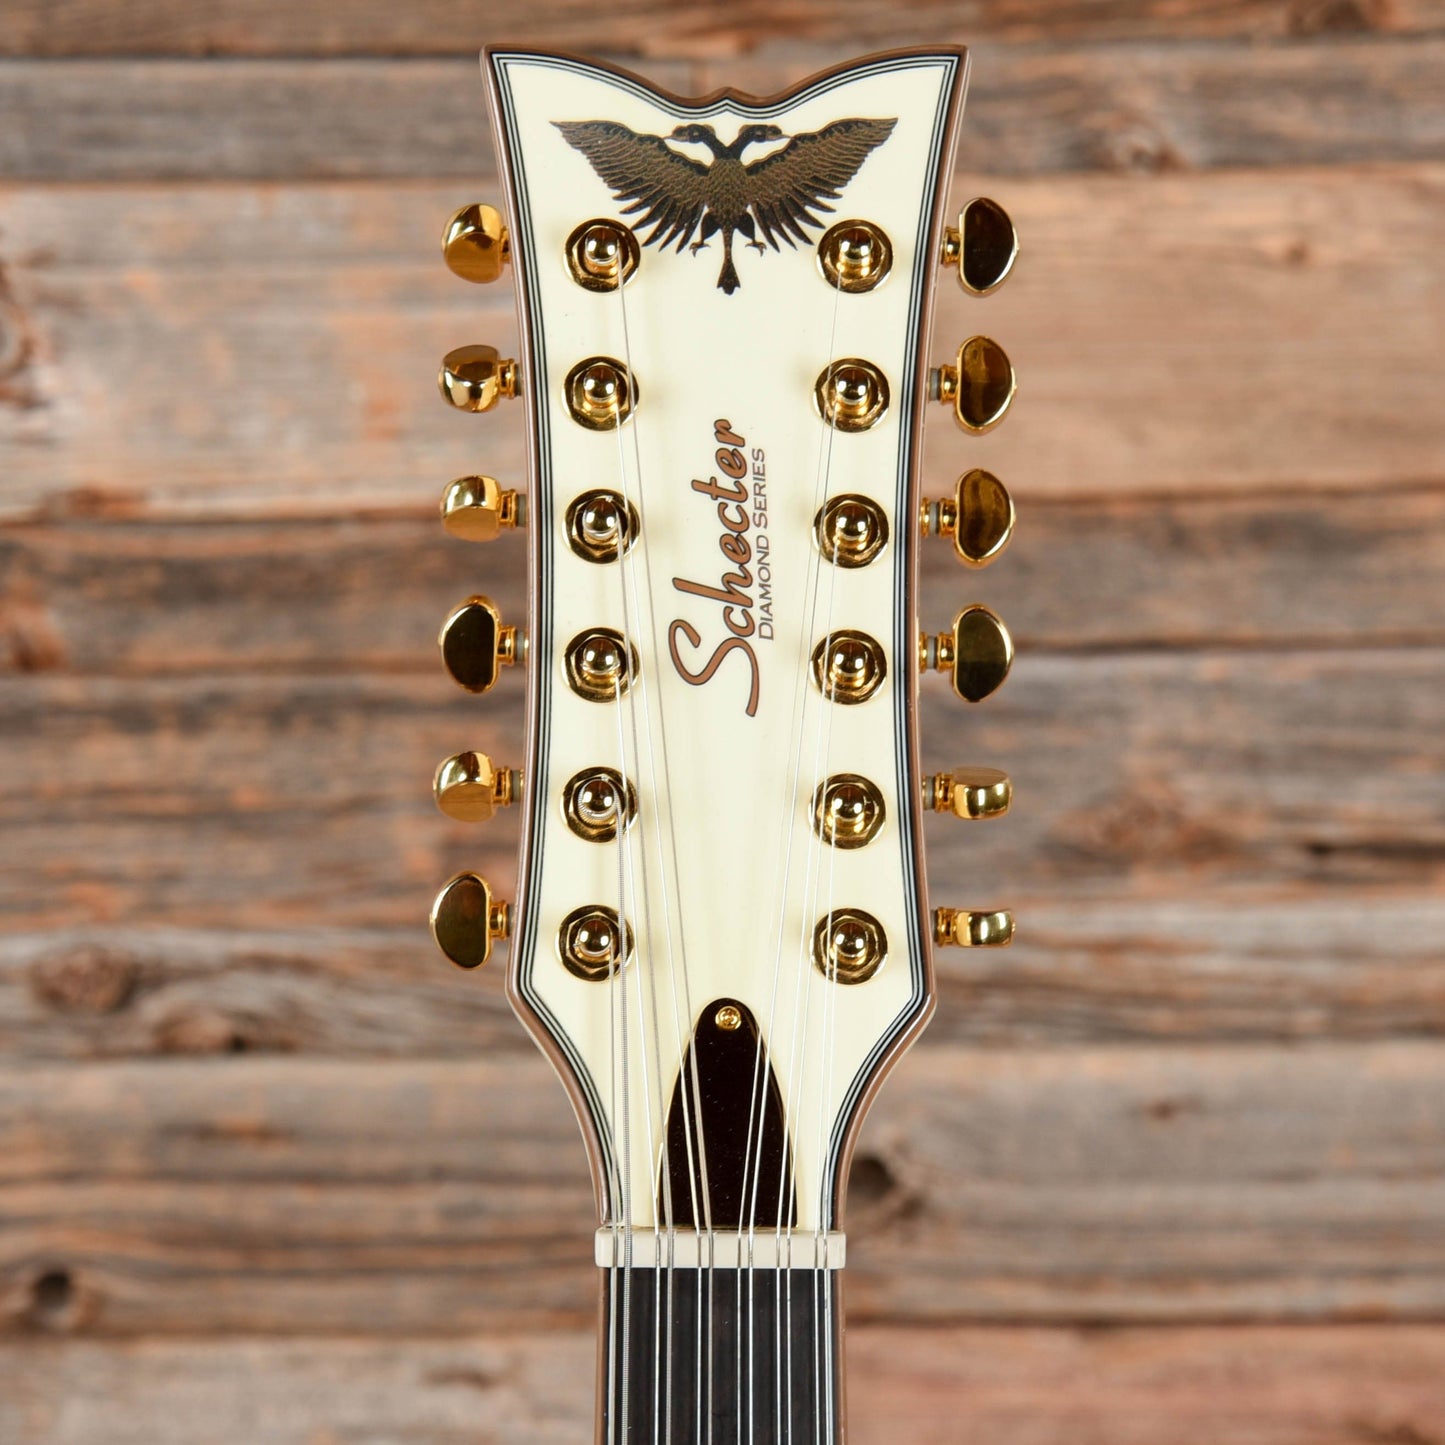 Schecter Wayne Hussey Corsair-12 Electric Guitars / Semi-Hollow